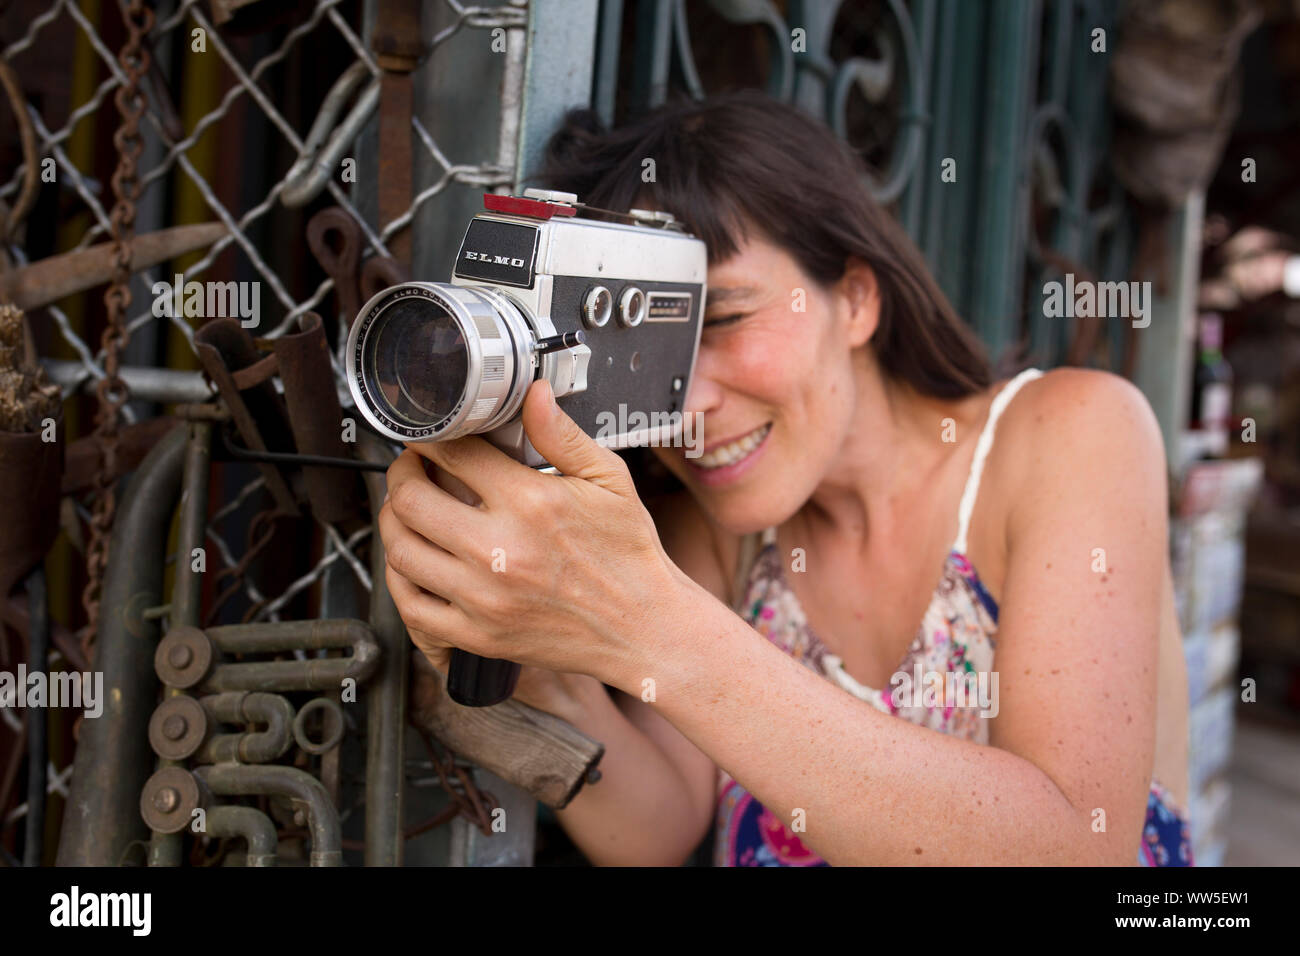 30 bis 40 Jahre alte Frau in Kleid im Metallgitter mit Super8-Kamera in der Hand Stockfoto